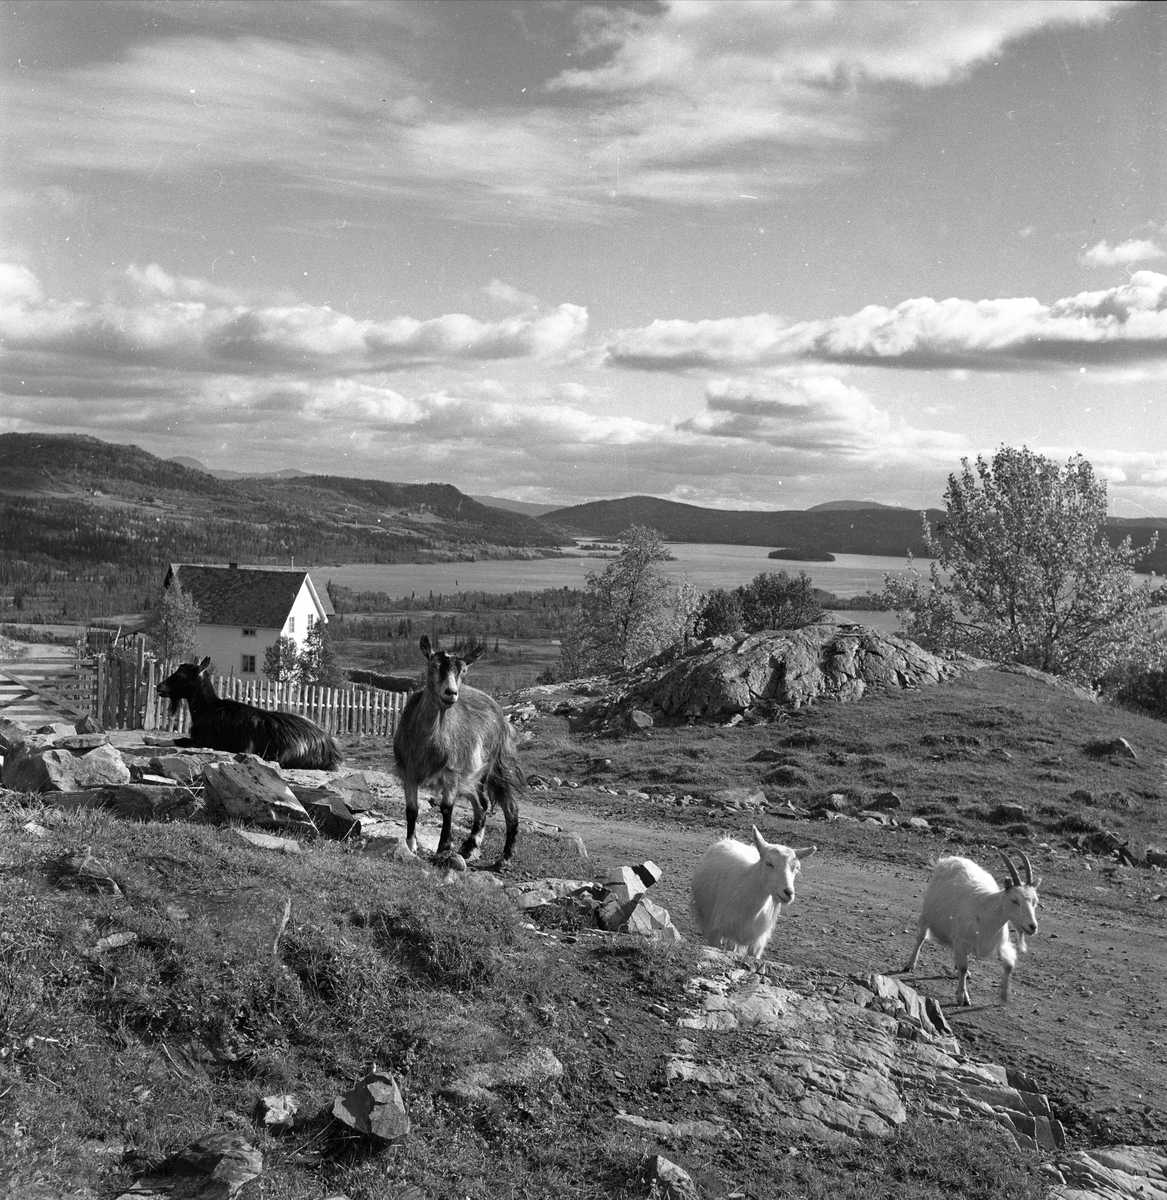 Øyangen, Øystre Slidre, Oppland, september 1957. Lykkja og Beito ved Øyangen. Landskap med geiter.